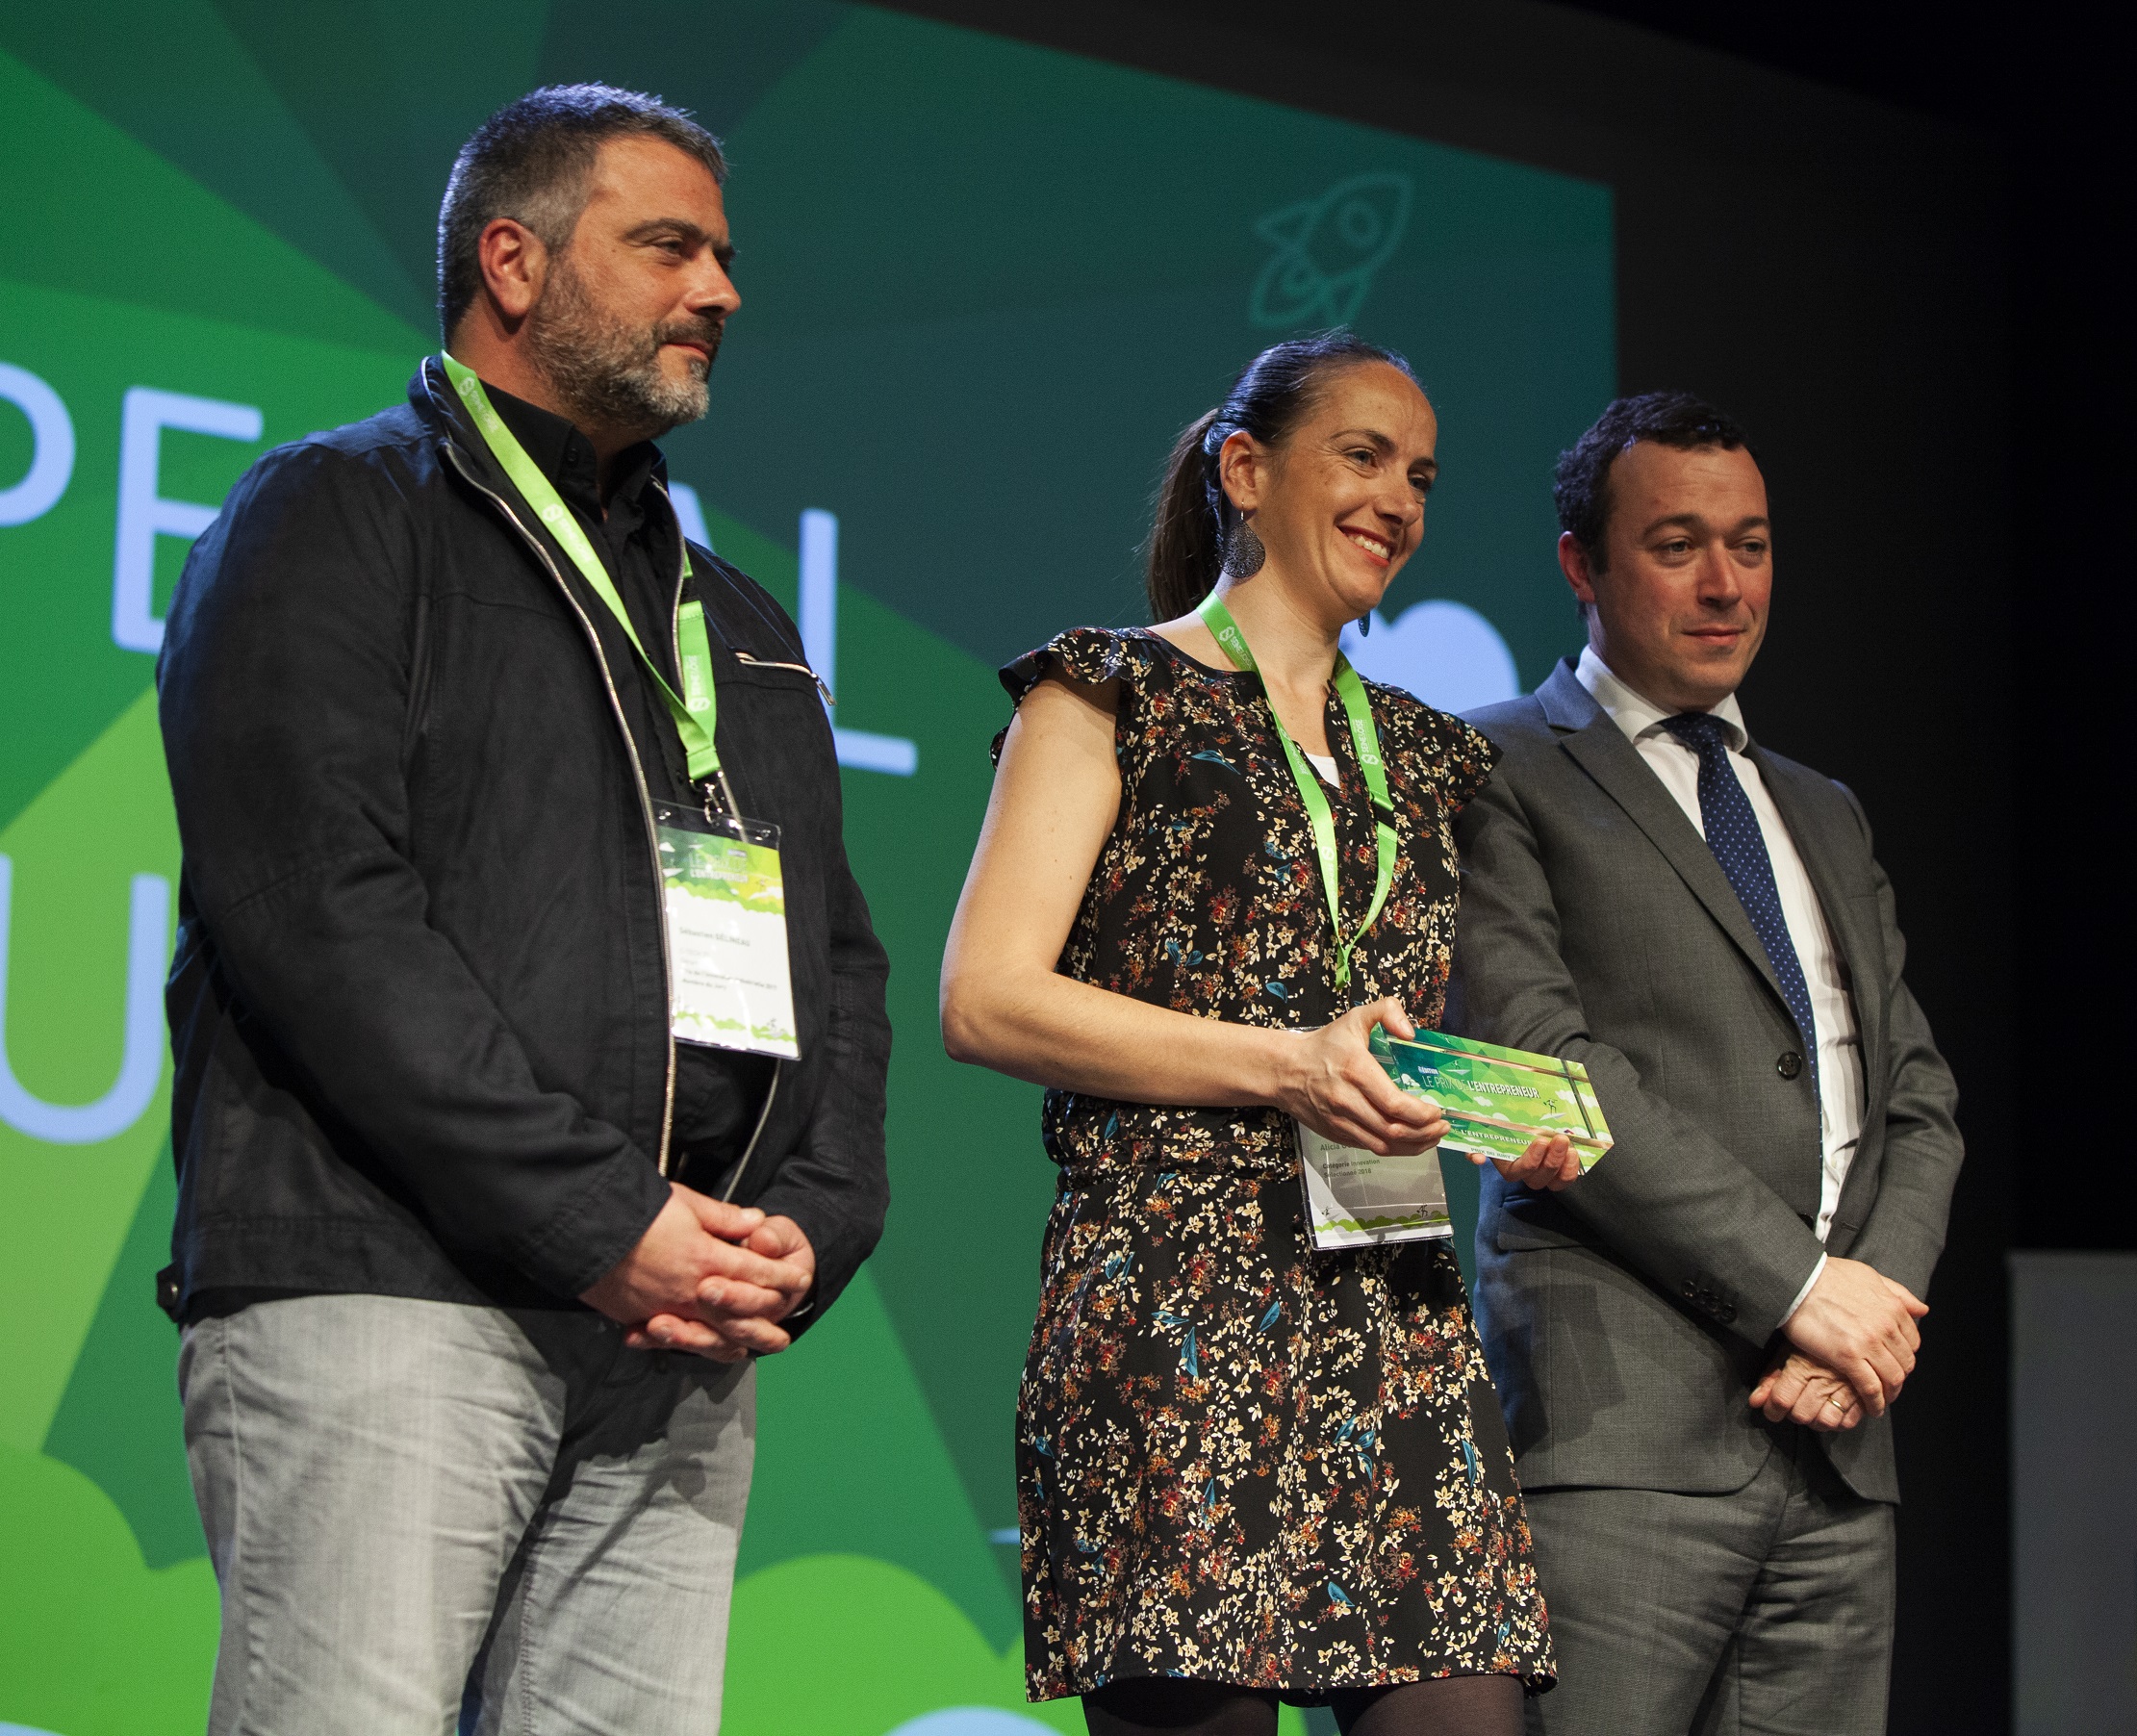 Prix de l'entrepreneur 2019 - Prix spécial du jury